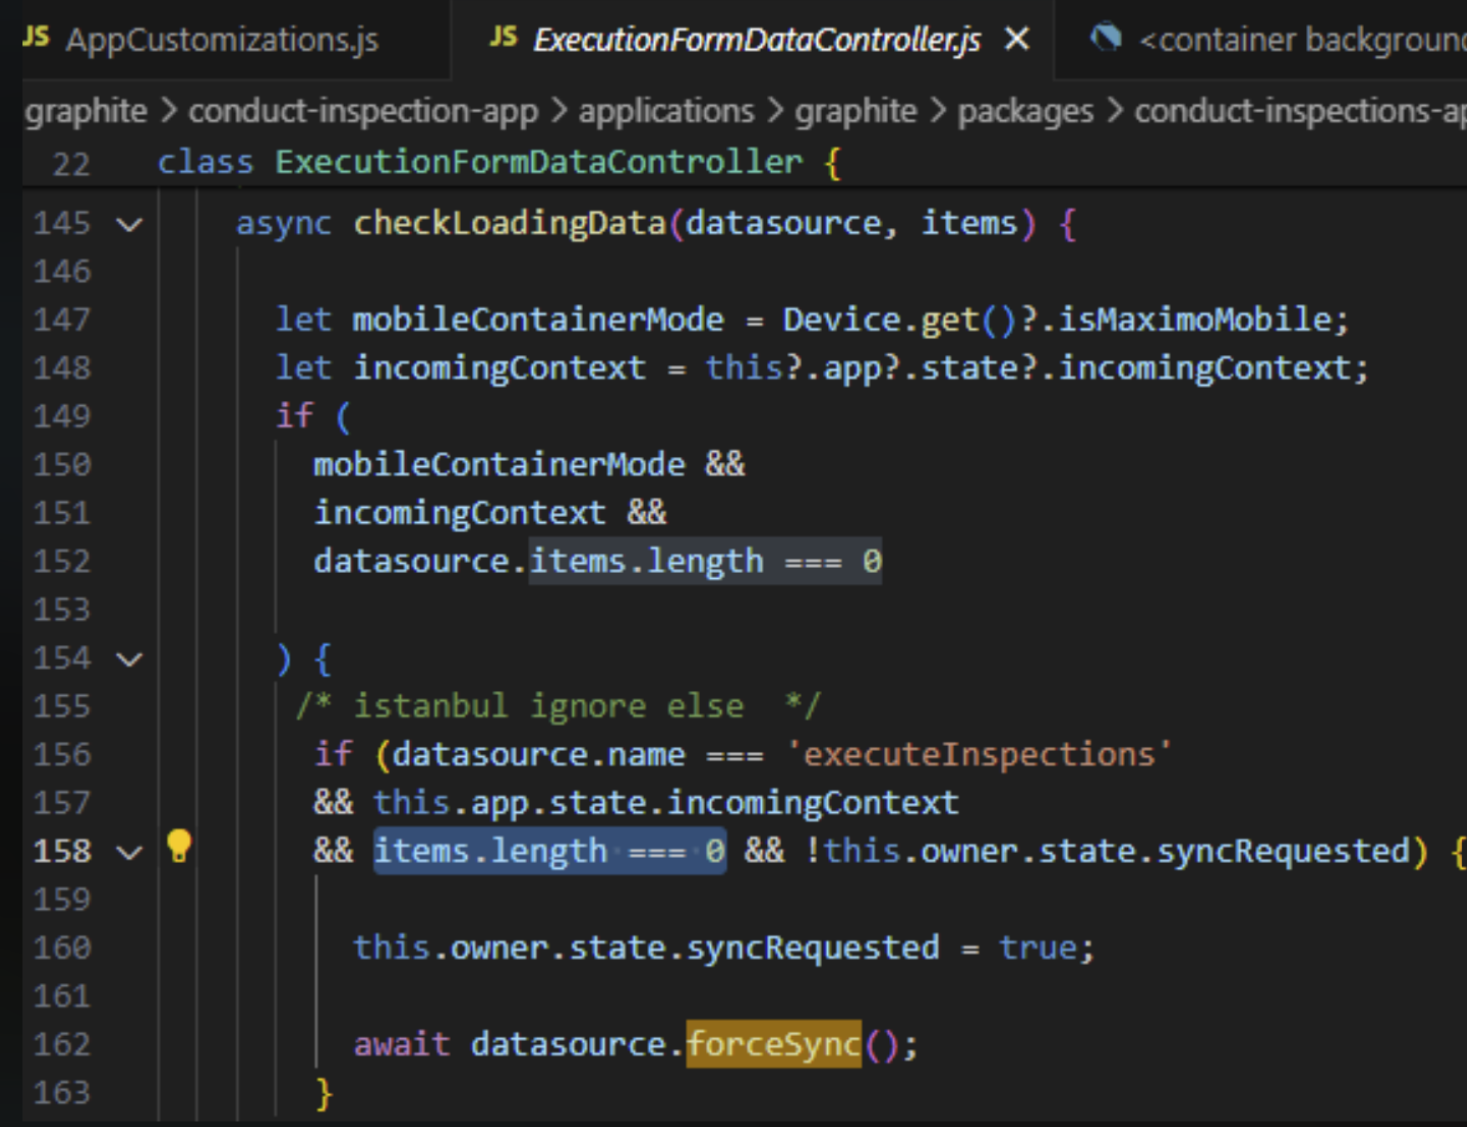 ExecutioFormDataController.js sample code